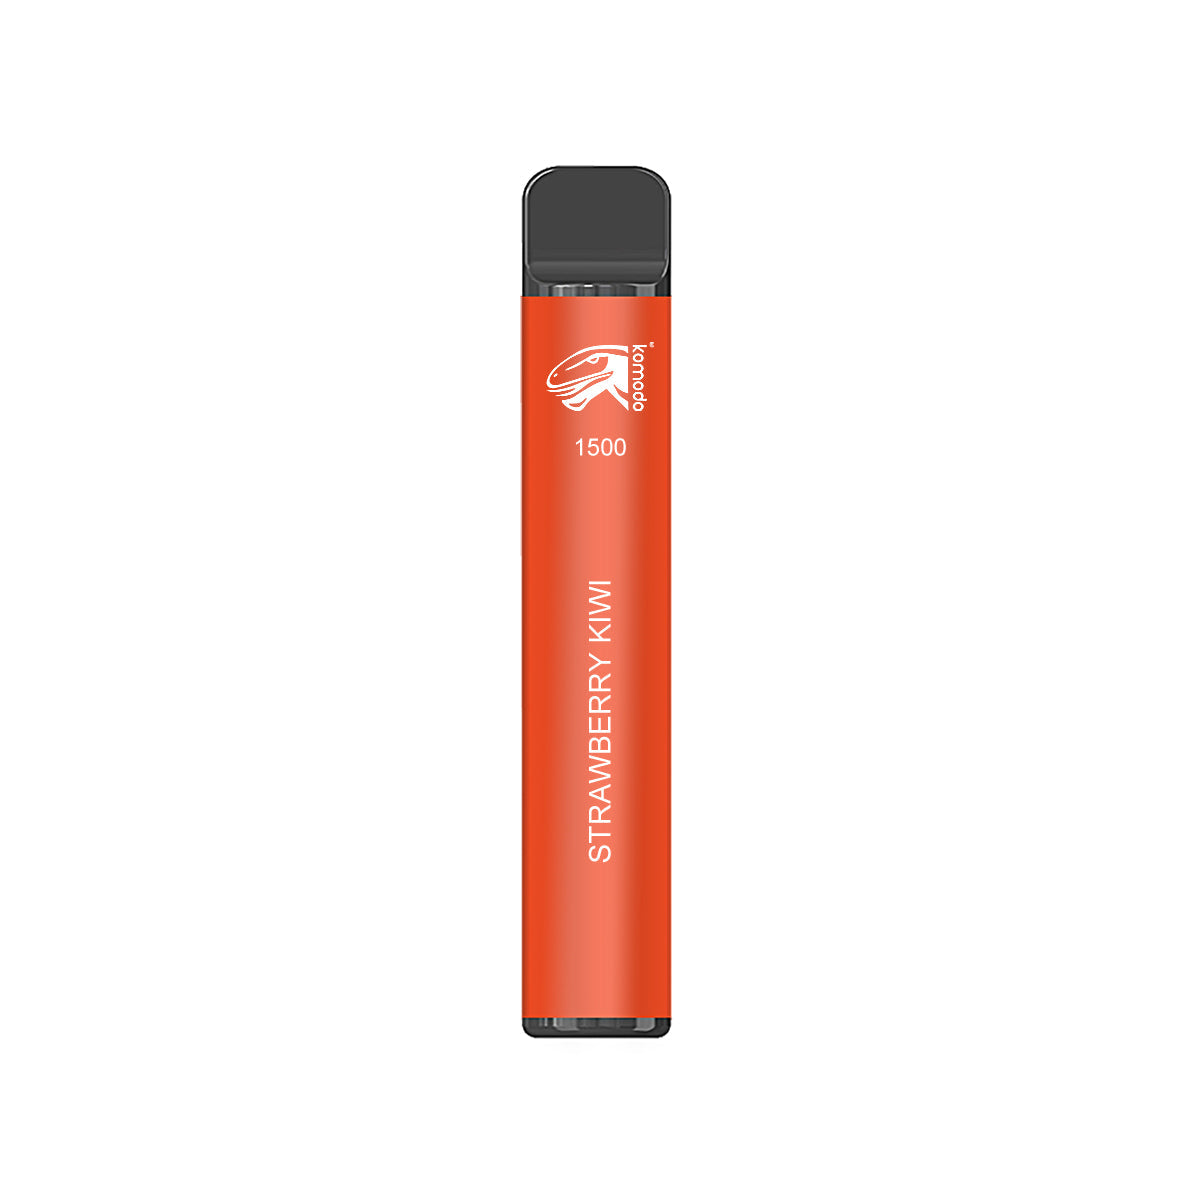 Komodo 1500 Puffs Disposable Vape Prefilled Electronic Cigarette (2pcs)